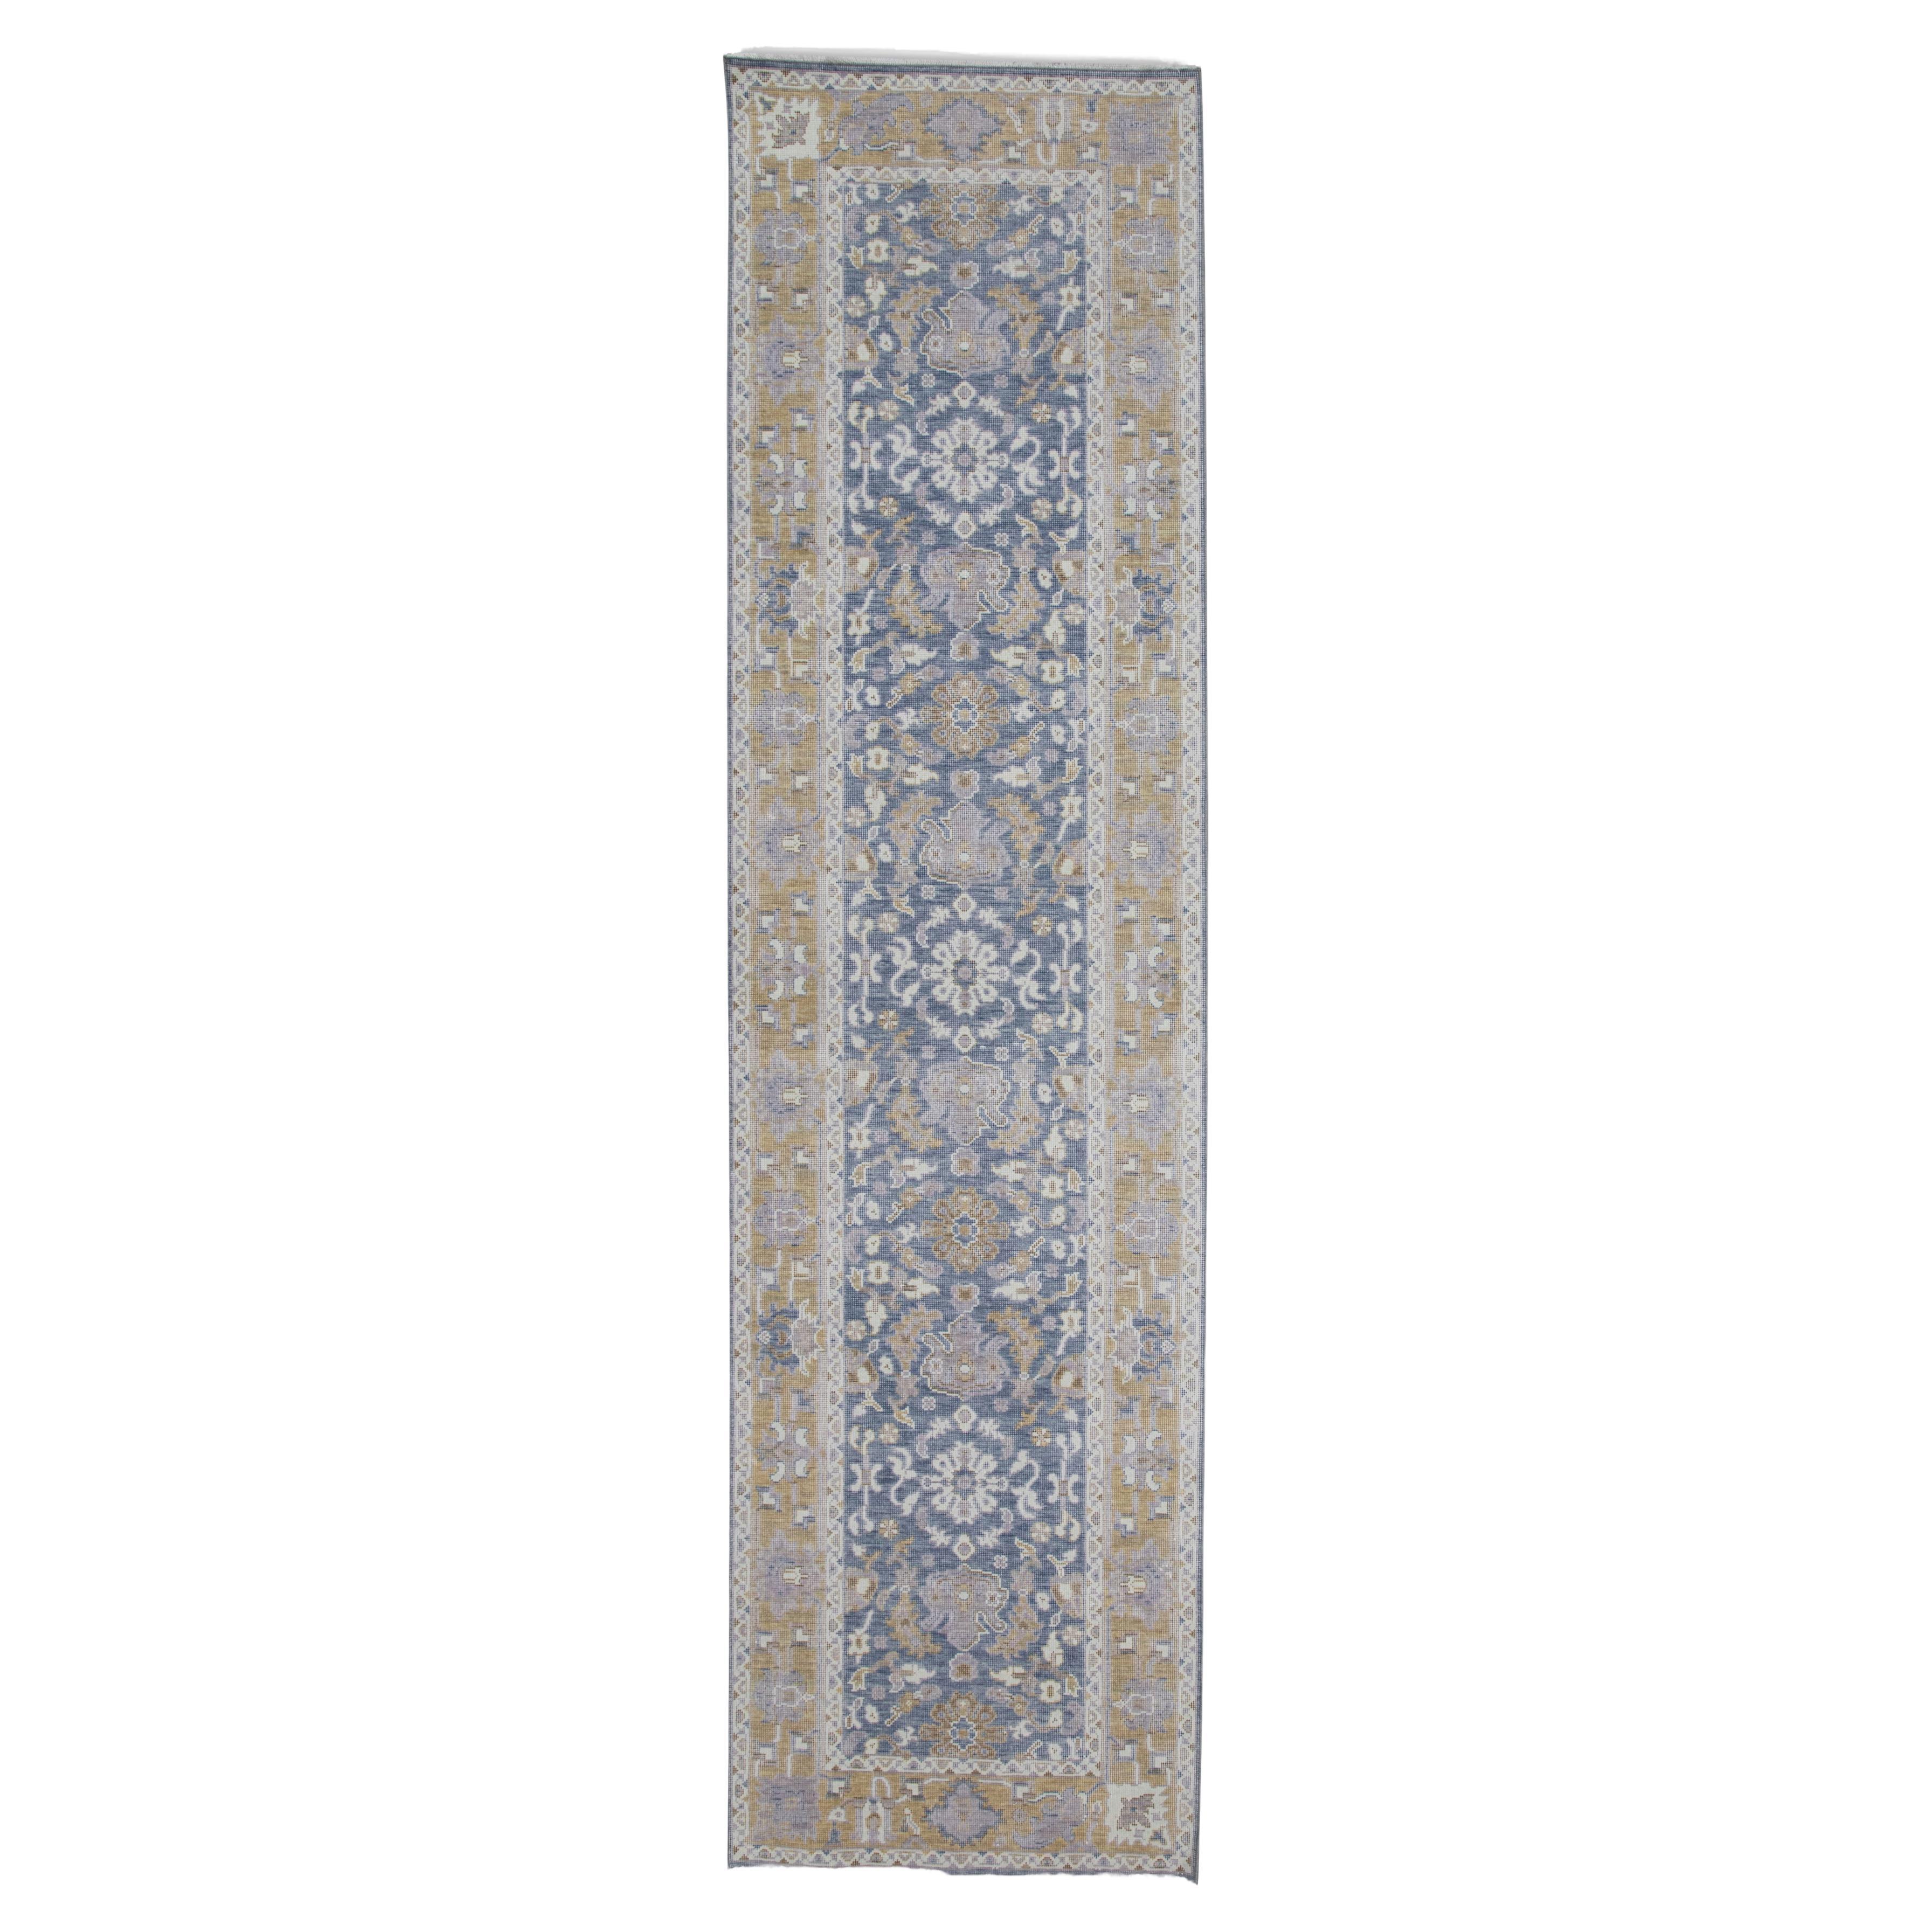 Handgewebter türkischer Oushak-Teppich aus Wolle 2'8"x 9'11"